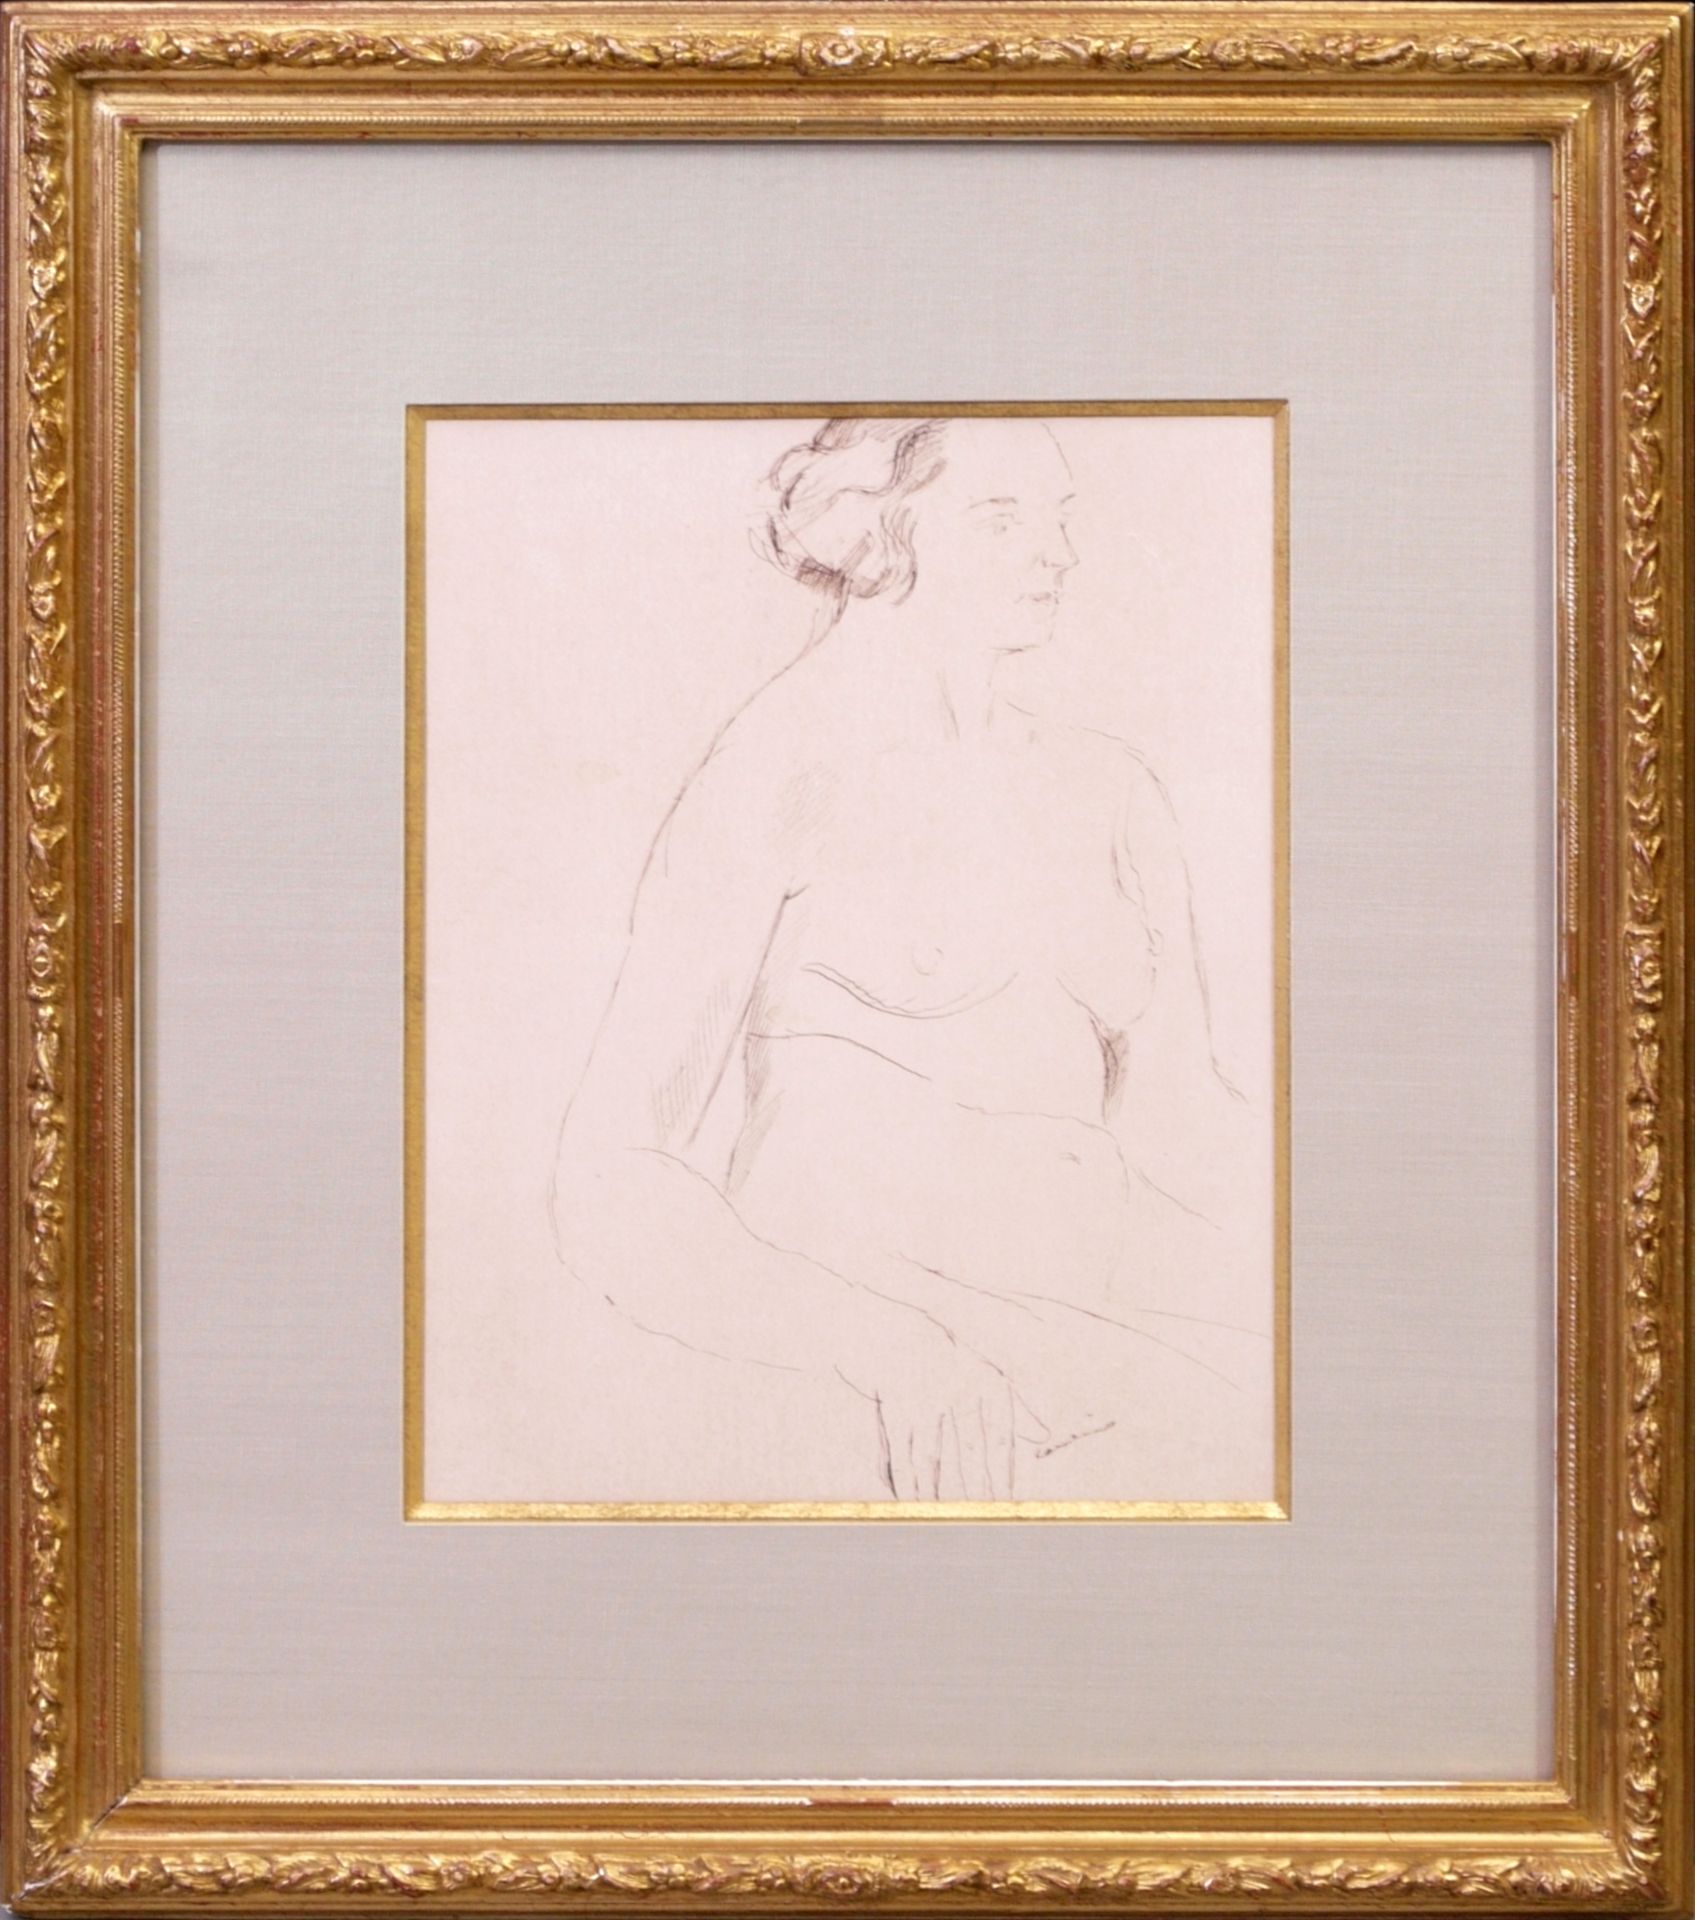 Coubine, Othon/ Kubîn (1883-1969) - Federzeichnung Studie Sitzender Frauenakt